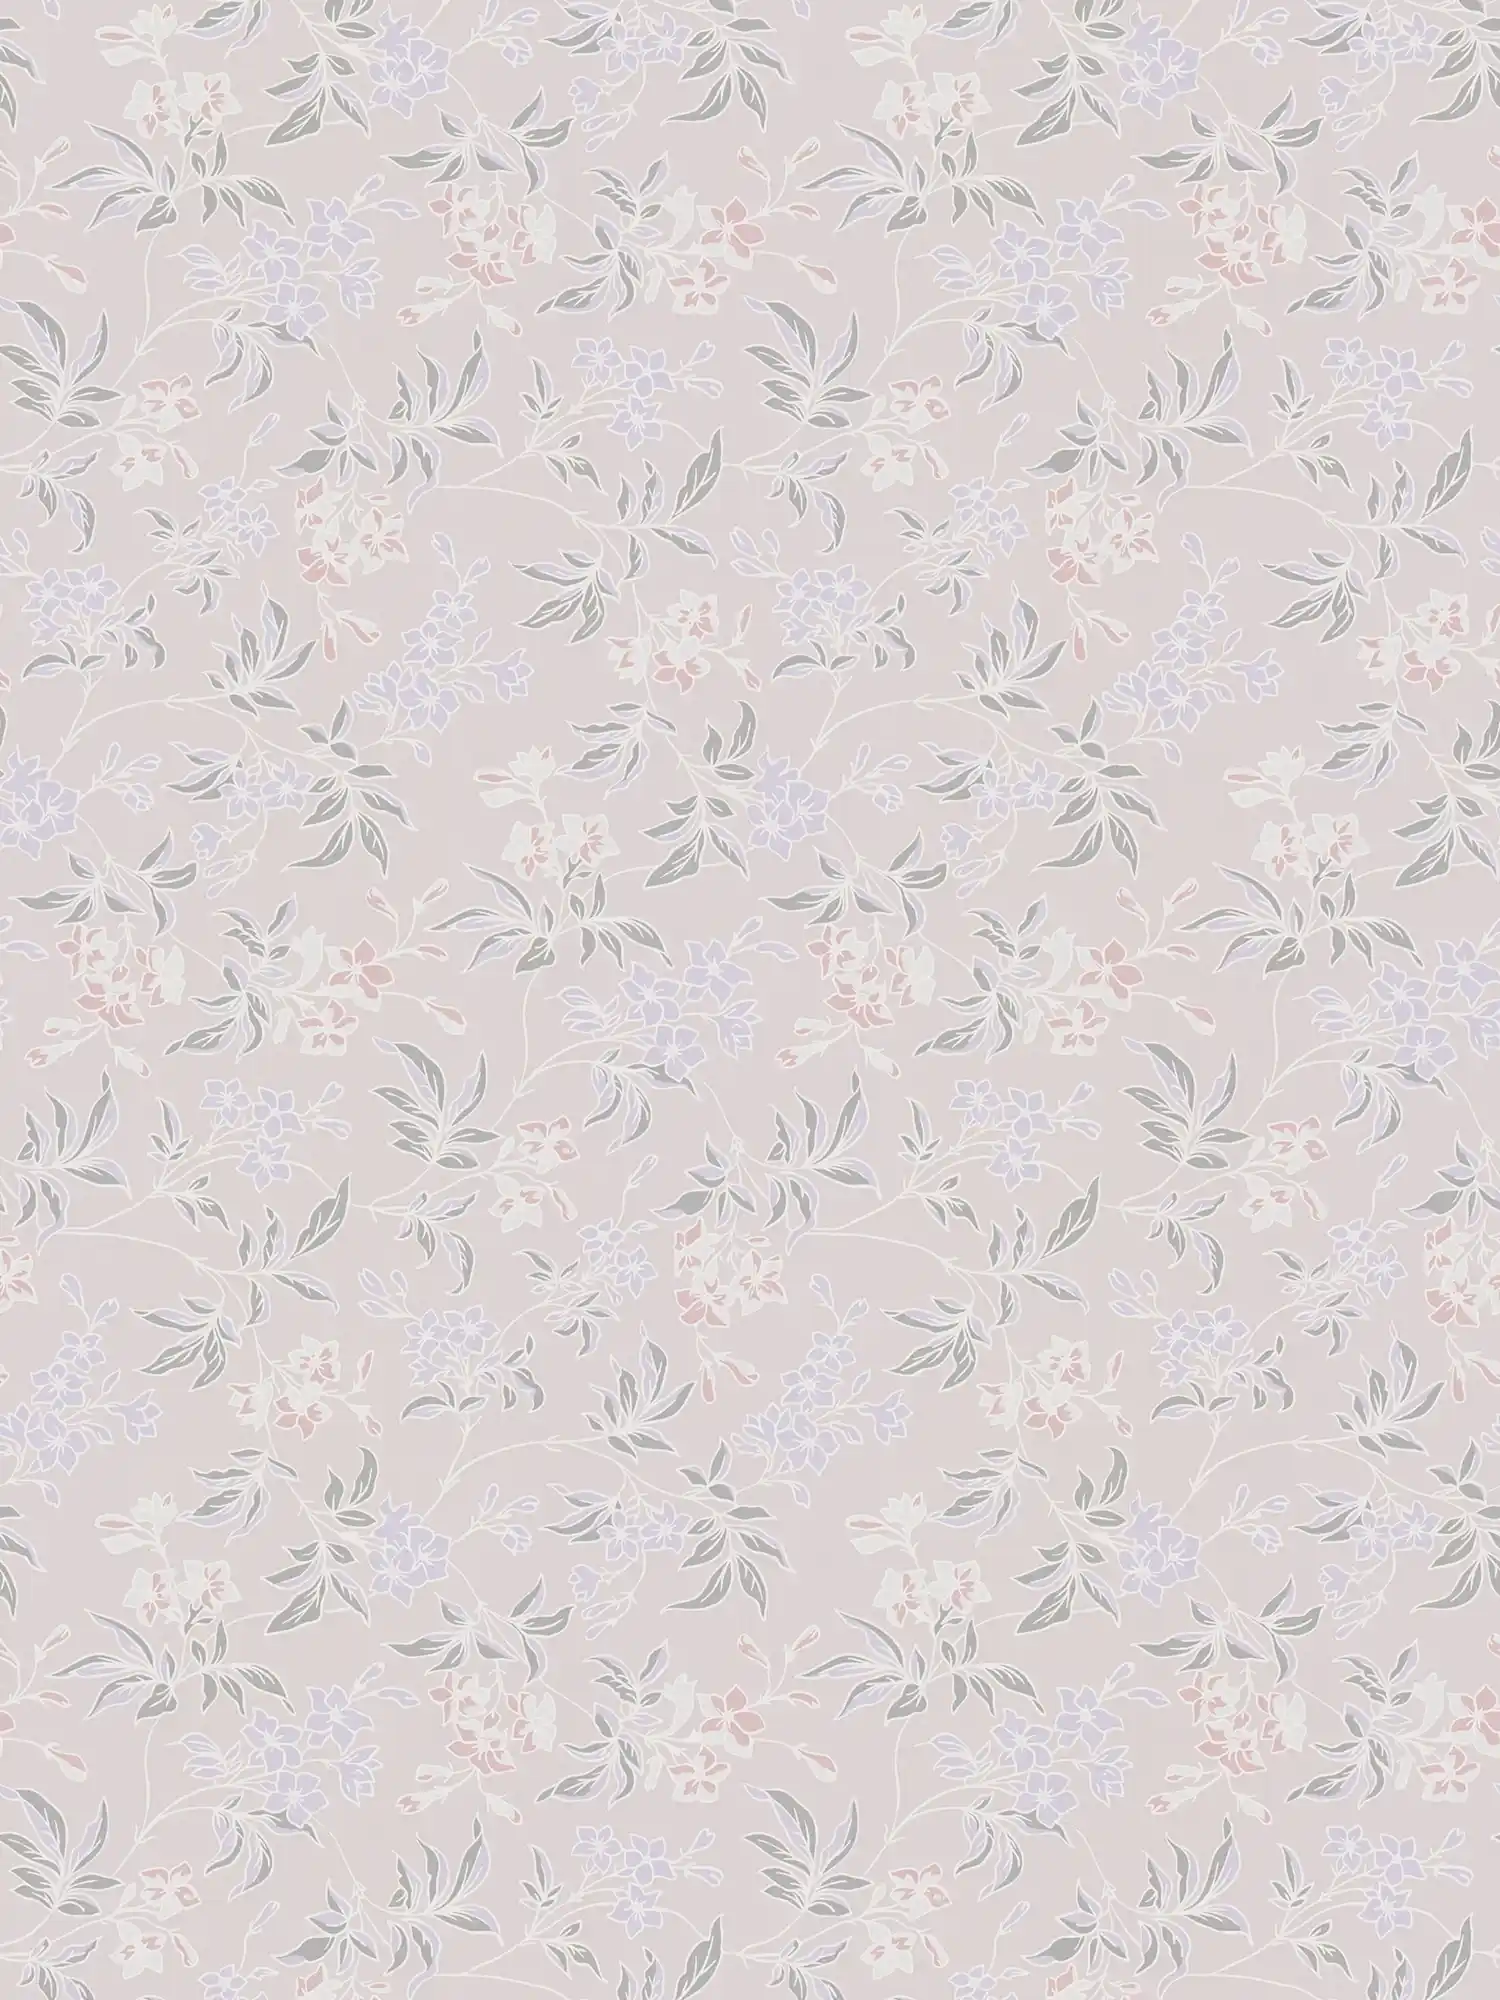 Vliestapete im englischen Stil mit floralem Muster – Creme, Rosa, Lila
